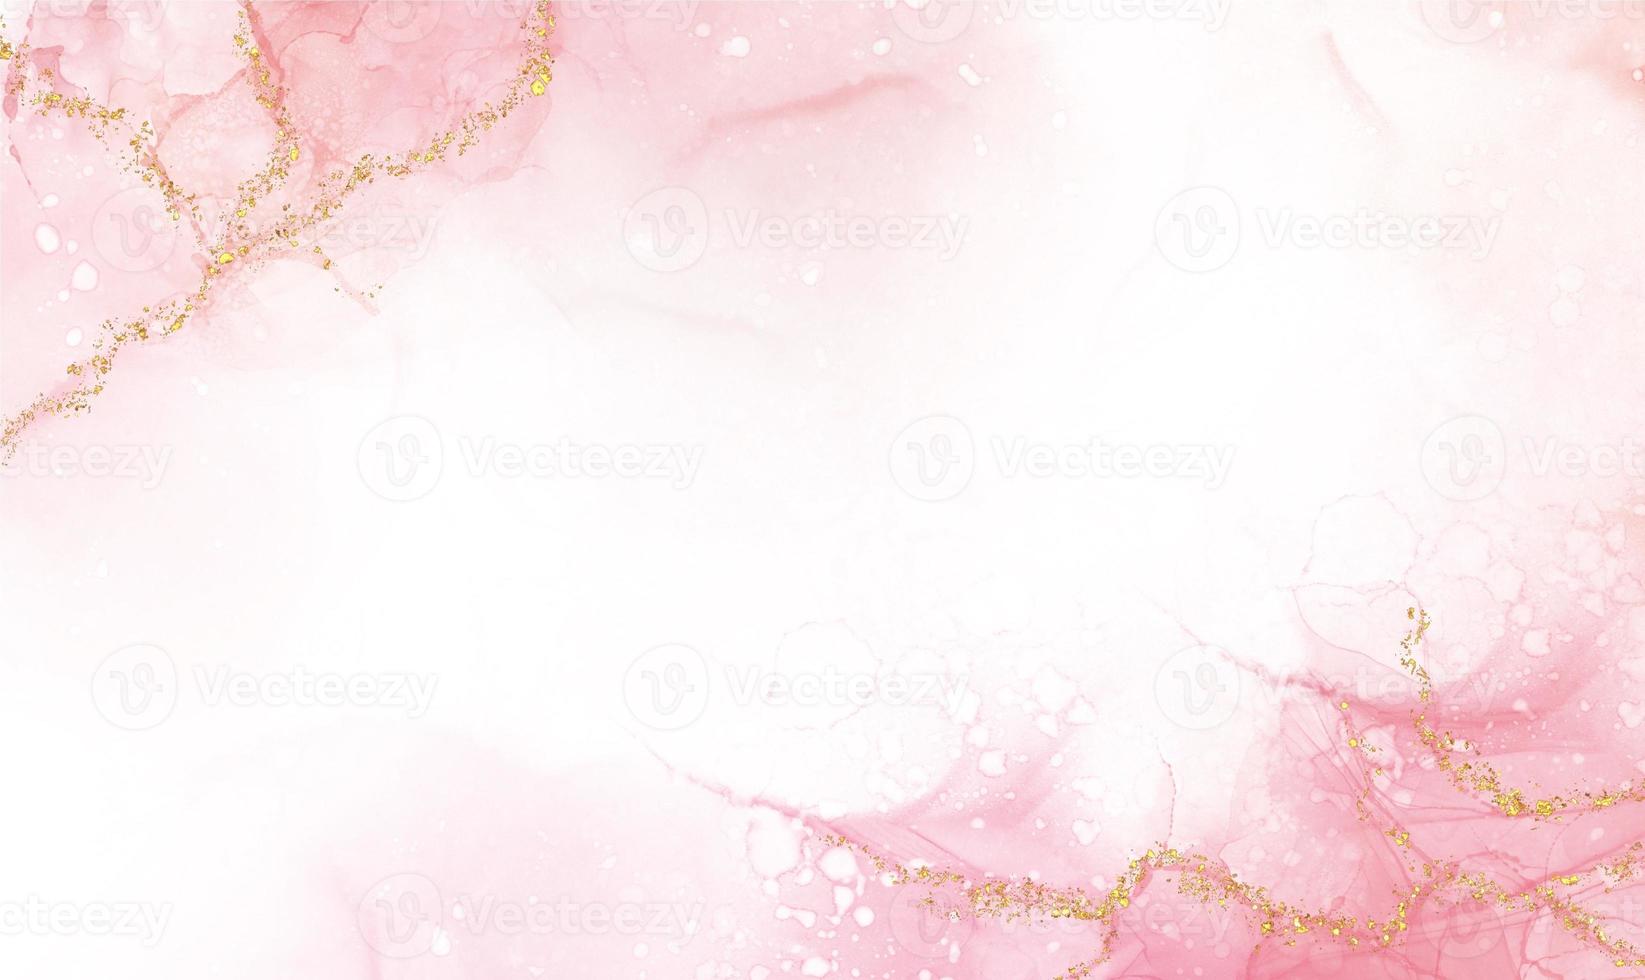 abstrakt vattenfärg eller alkohol bläck konst med reste sig guld rosa vit bakgrund guld glitter. pastell marmor teckning effekt. llustration design mall för bröllop inbjudan, dekoration, baner foto